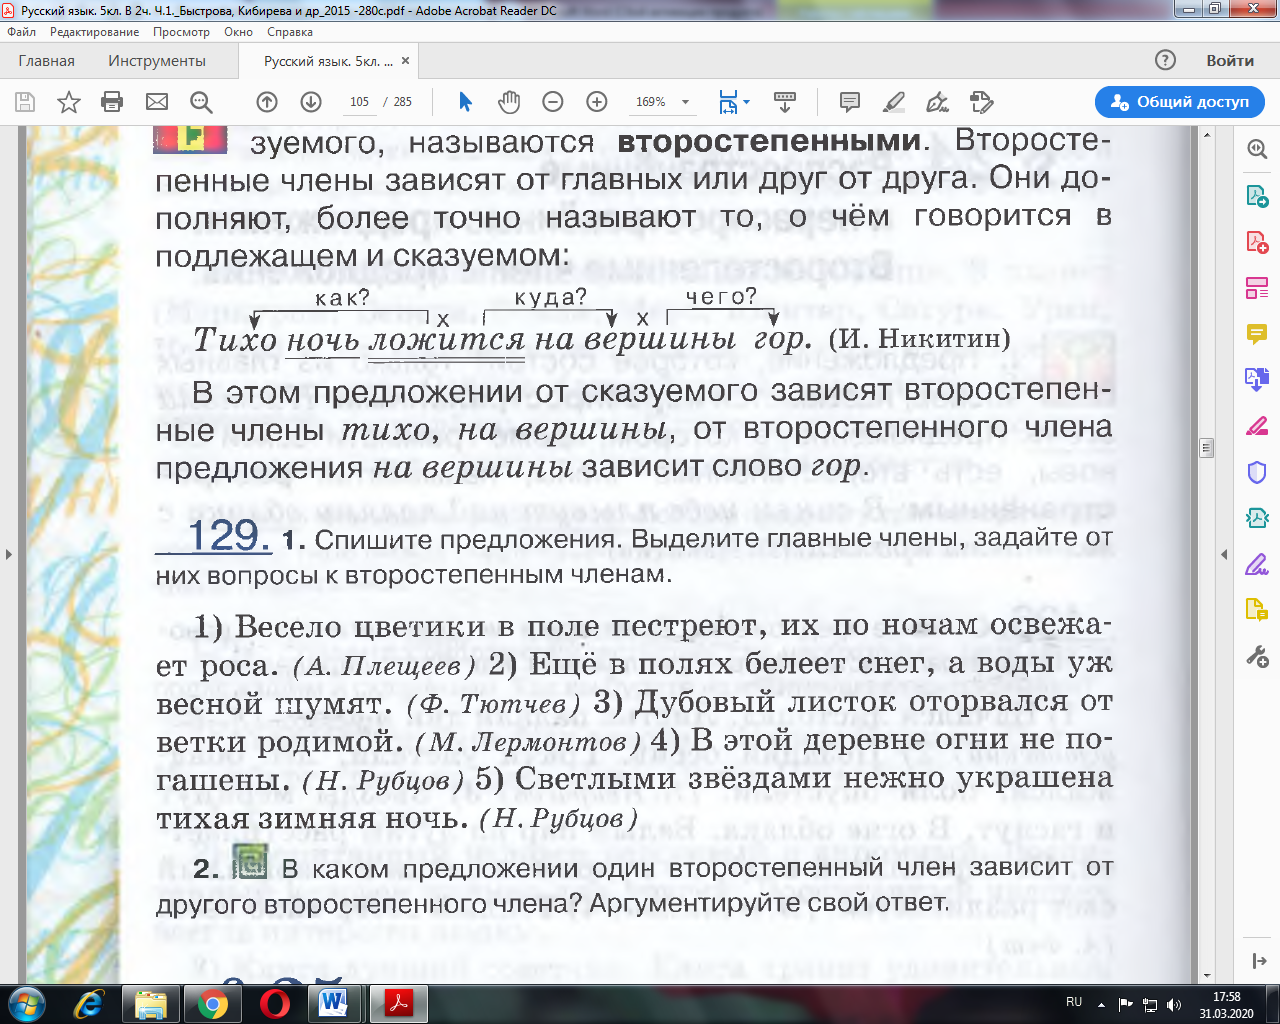 Поурочное планирование дистант-уроков русского языка в 5 классе (4 четверть)